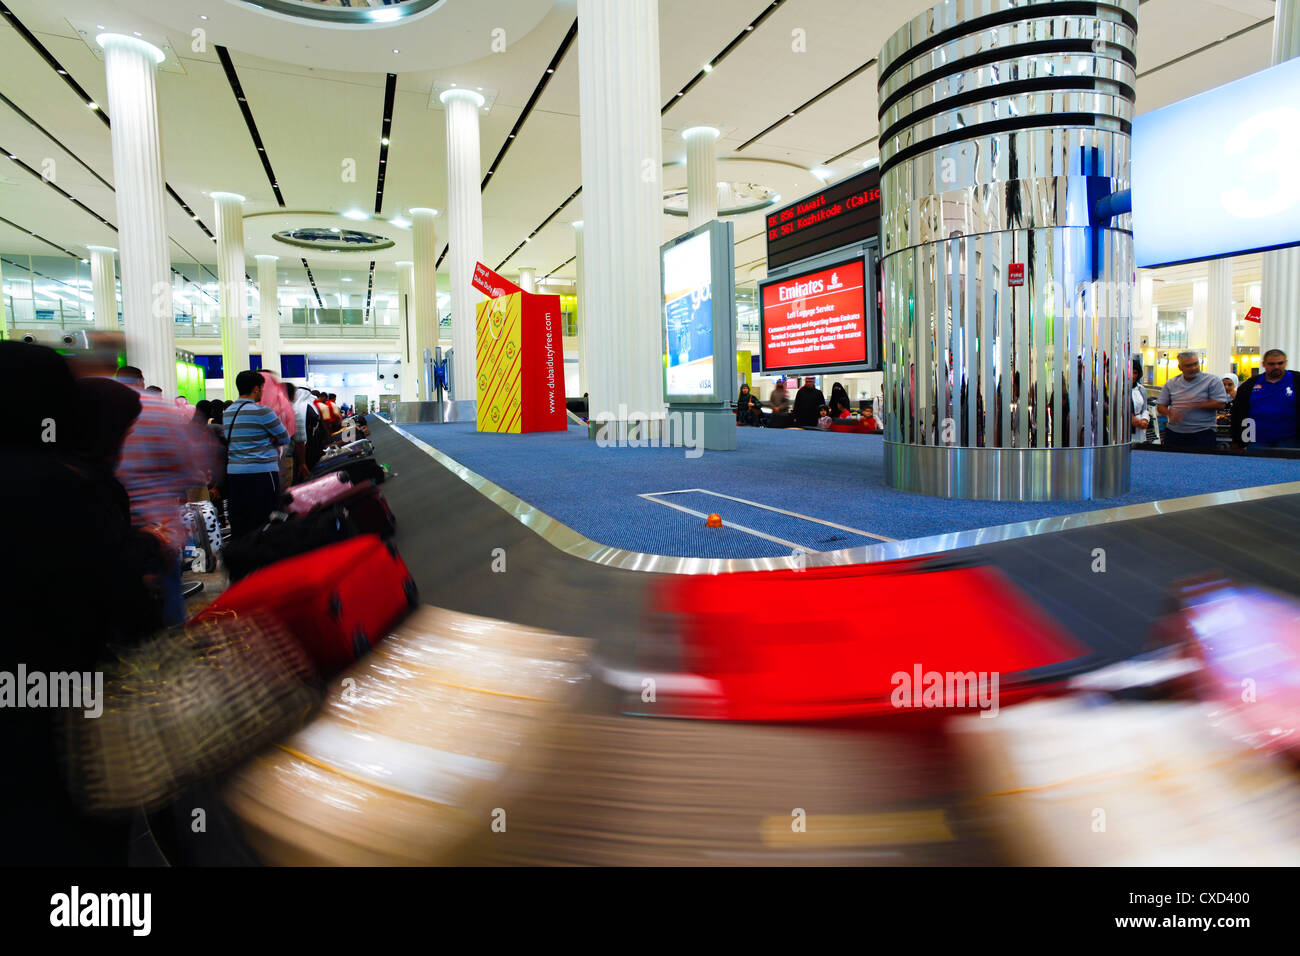 Carrousel à bagages dans le hall des arrivées, terminal 3, Aéroport International de Dubai, Dubaï, Émirats arabes unis, Moyen Orient Banque D'Images